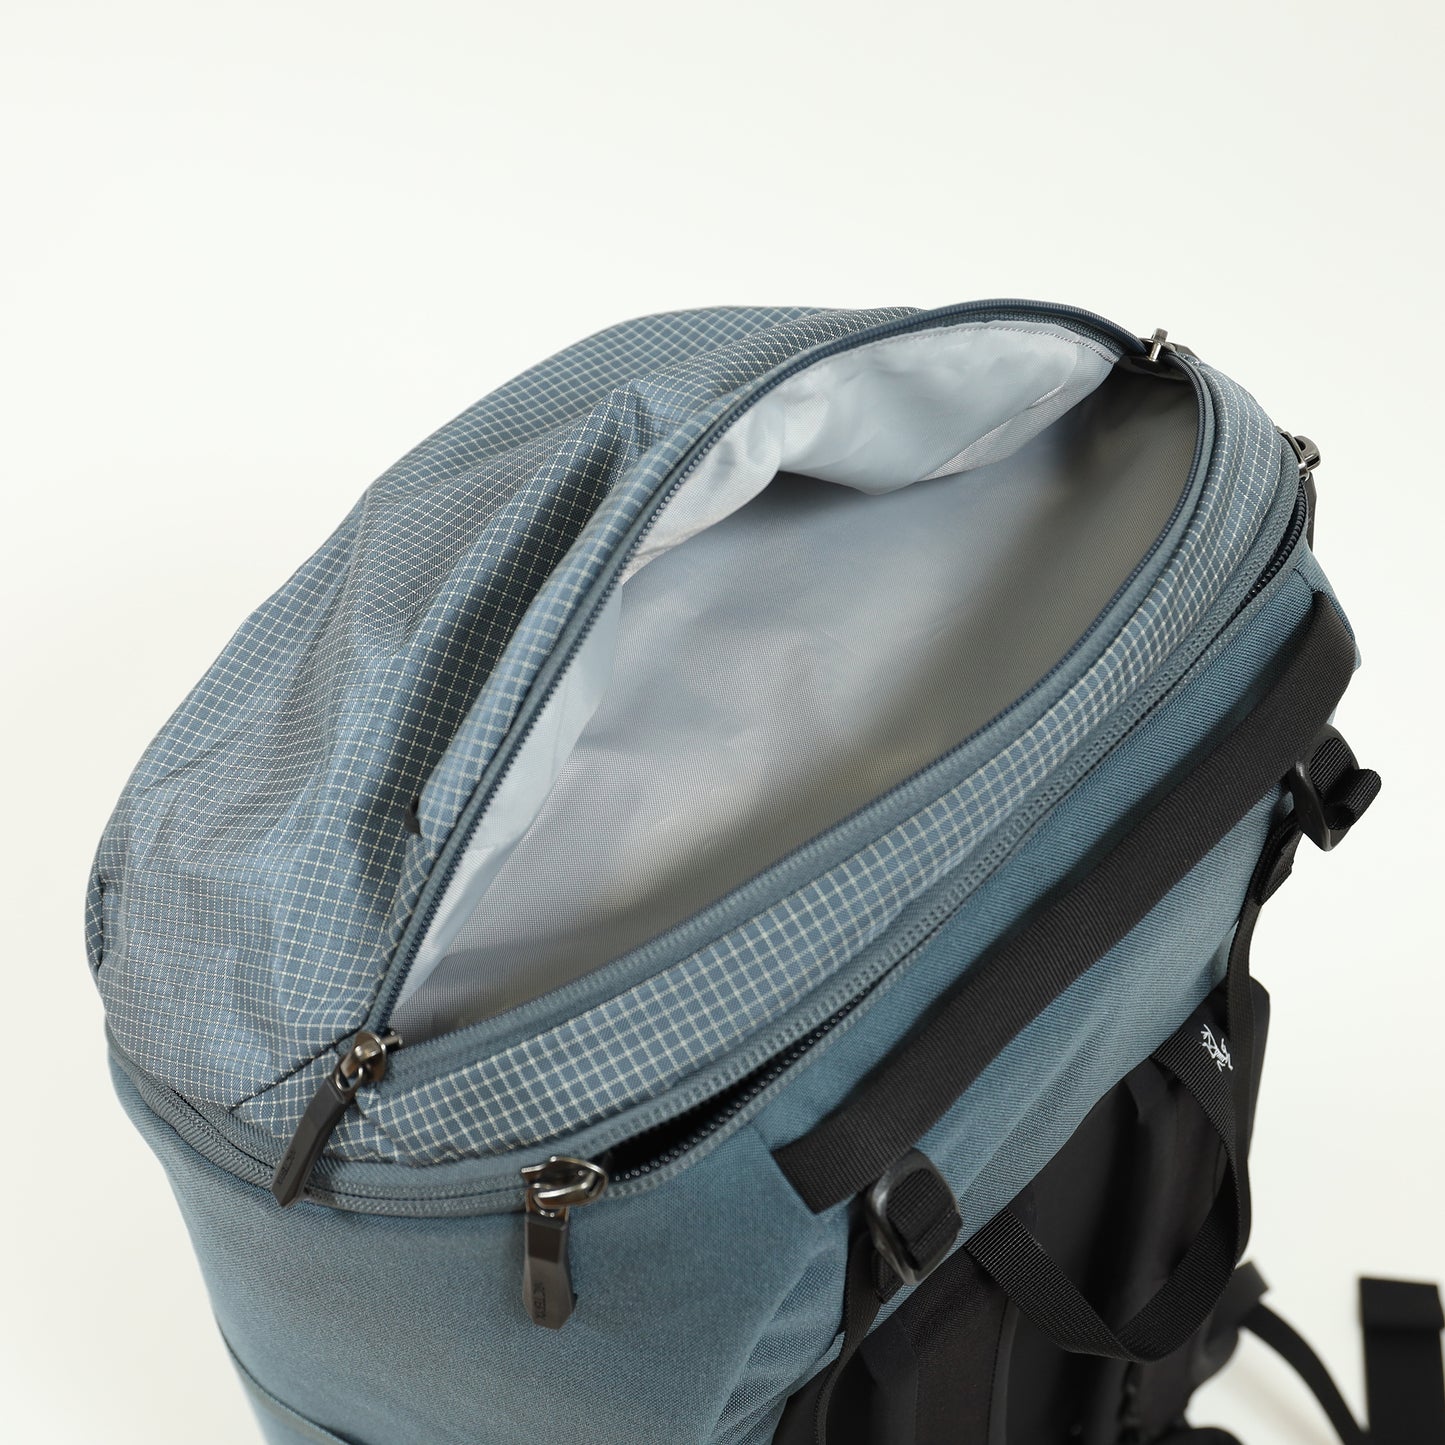 【Arc'teryx】Konseal 55 Backpack